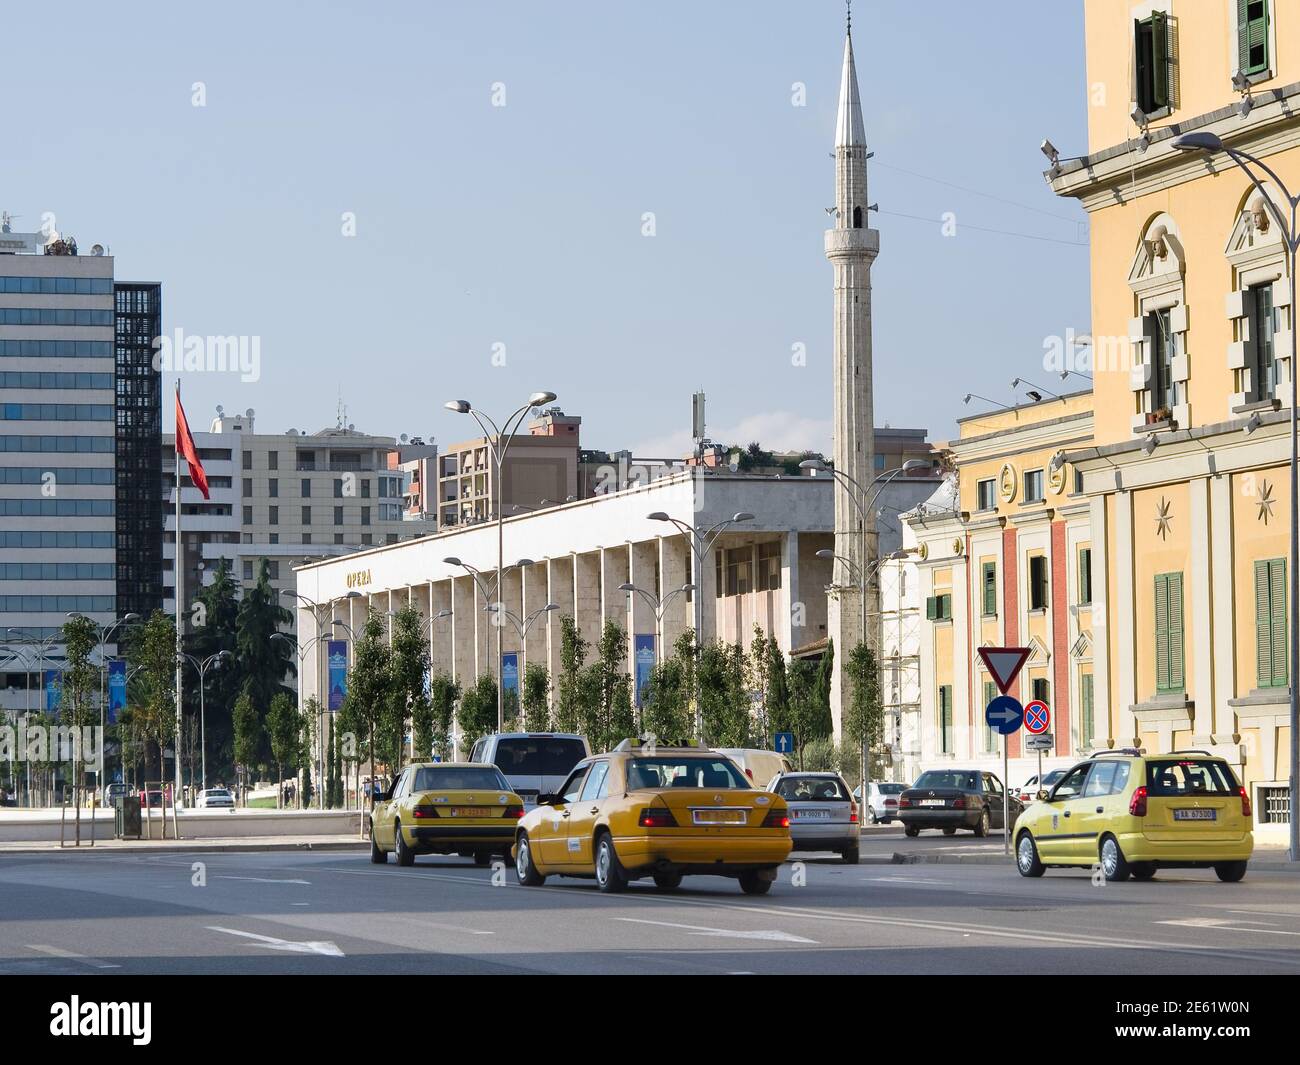 Tirana, Albania - 26 luglio 2012: Auto e taxi gialli nel traffico di piazza Skanderbeg a Tirana; sono visibili sullo sfondo il minareto di Ethem Foto Stock